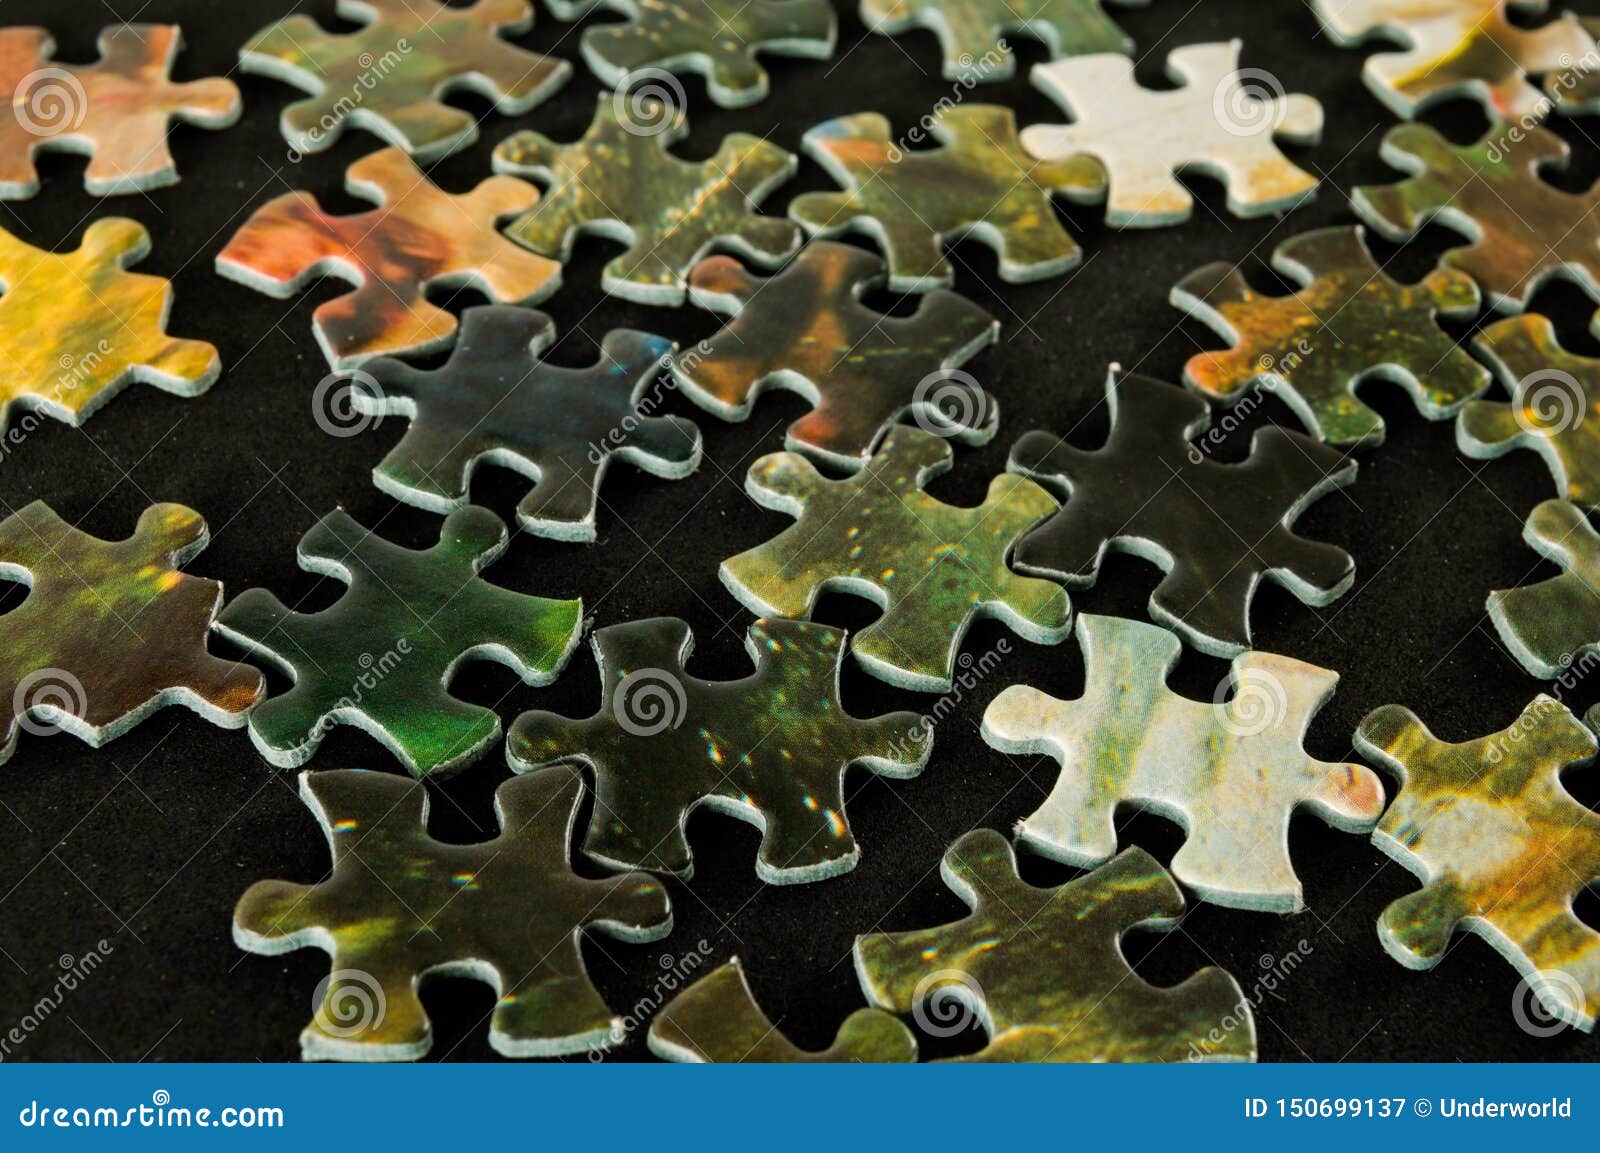 Jigsaw puzzle Background stock image. Image of problem - 150699137